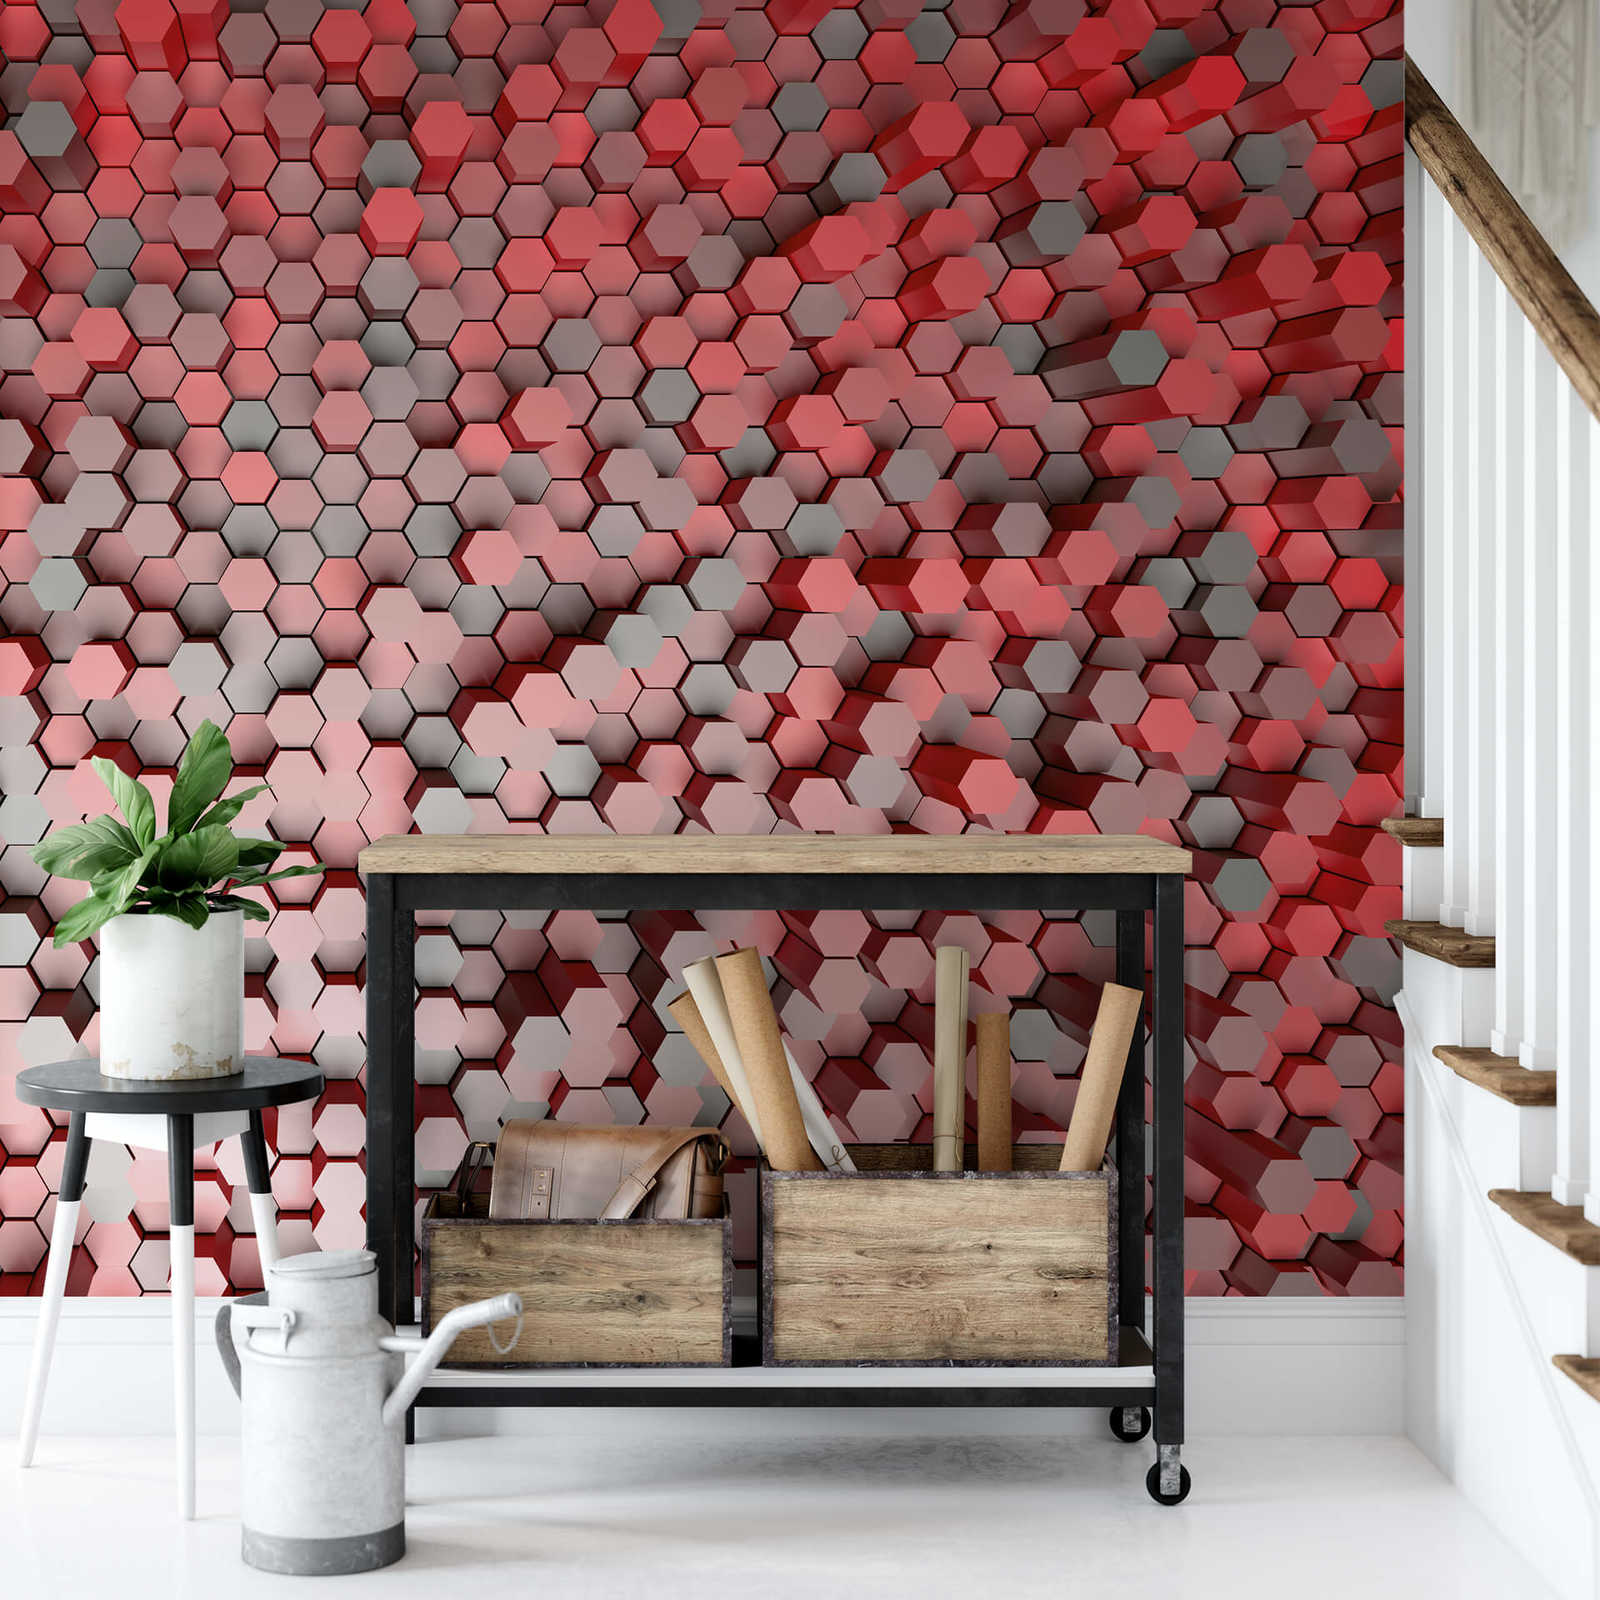             Papier peint graphique 3D motif hexagonal - rouge, gris
        